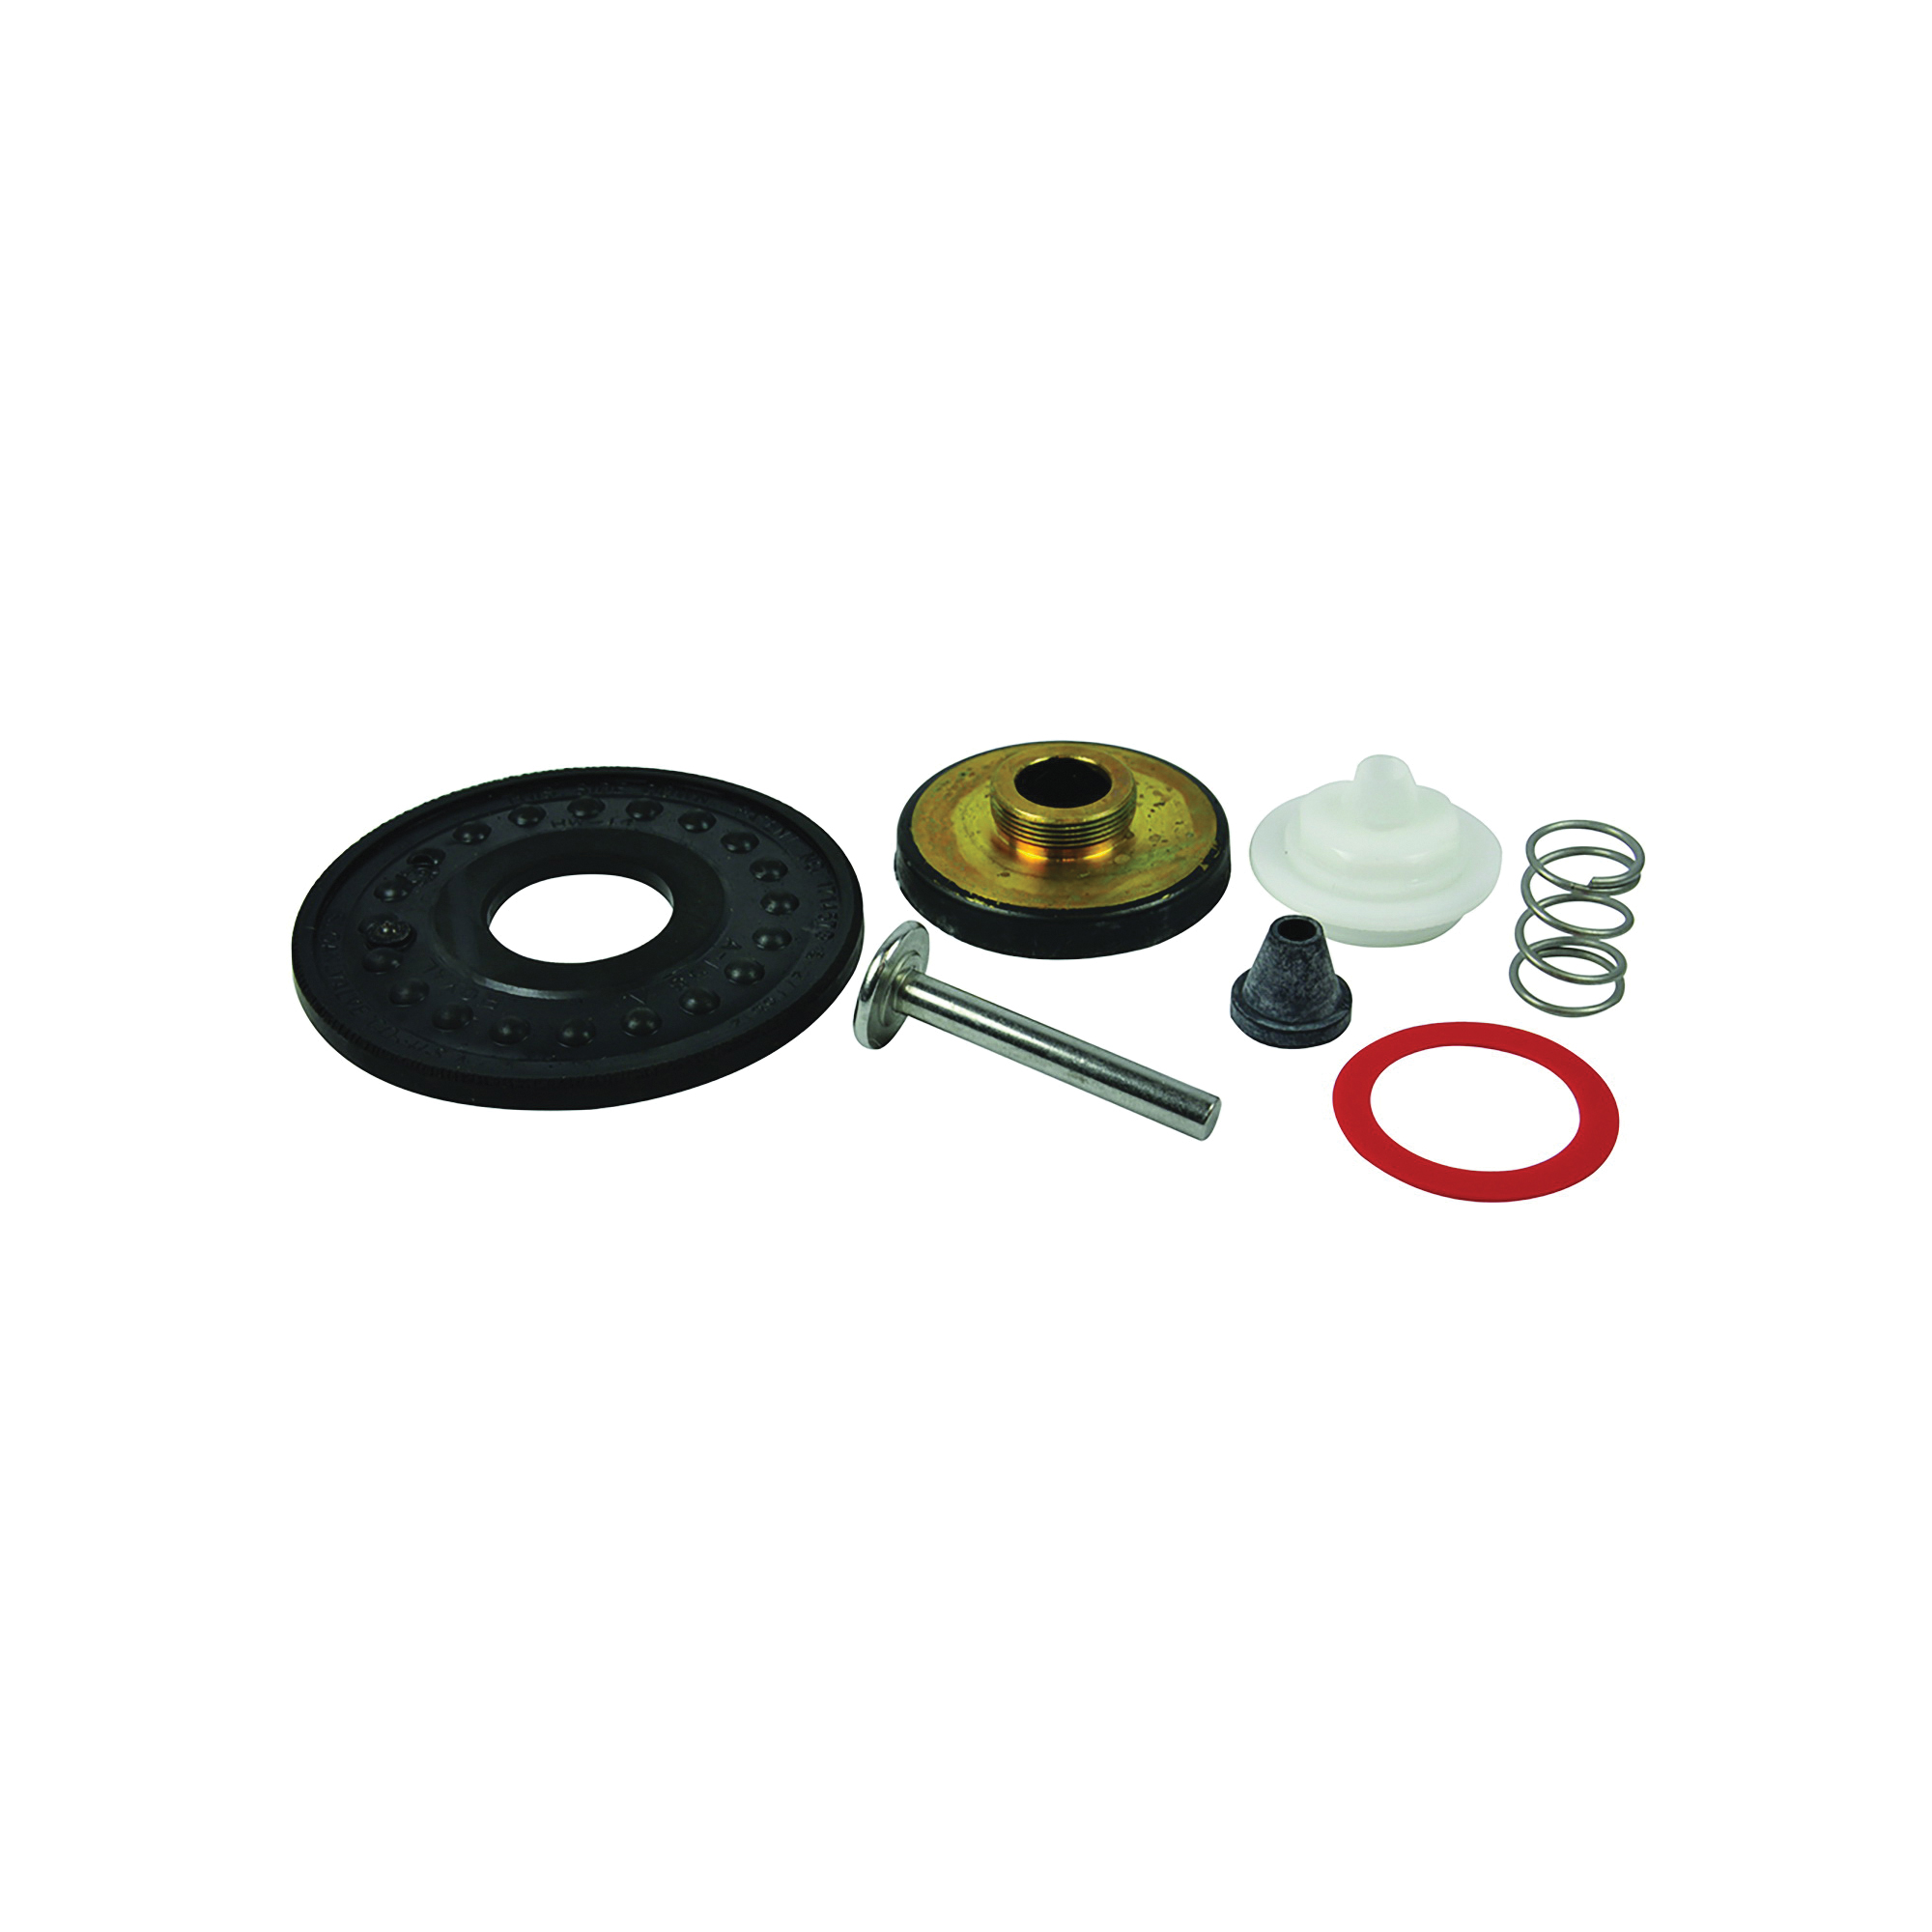 37058 Toilet Repair Kit, For: Sloan SL-2 Royal Flush Valves